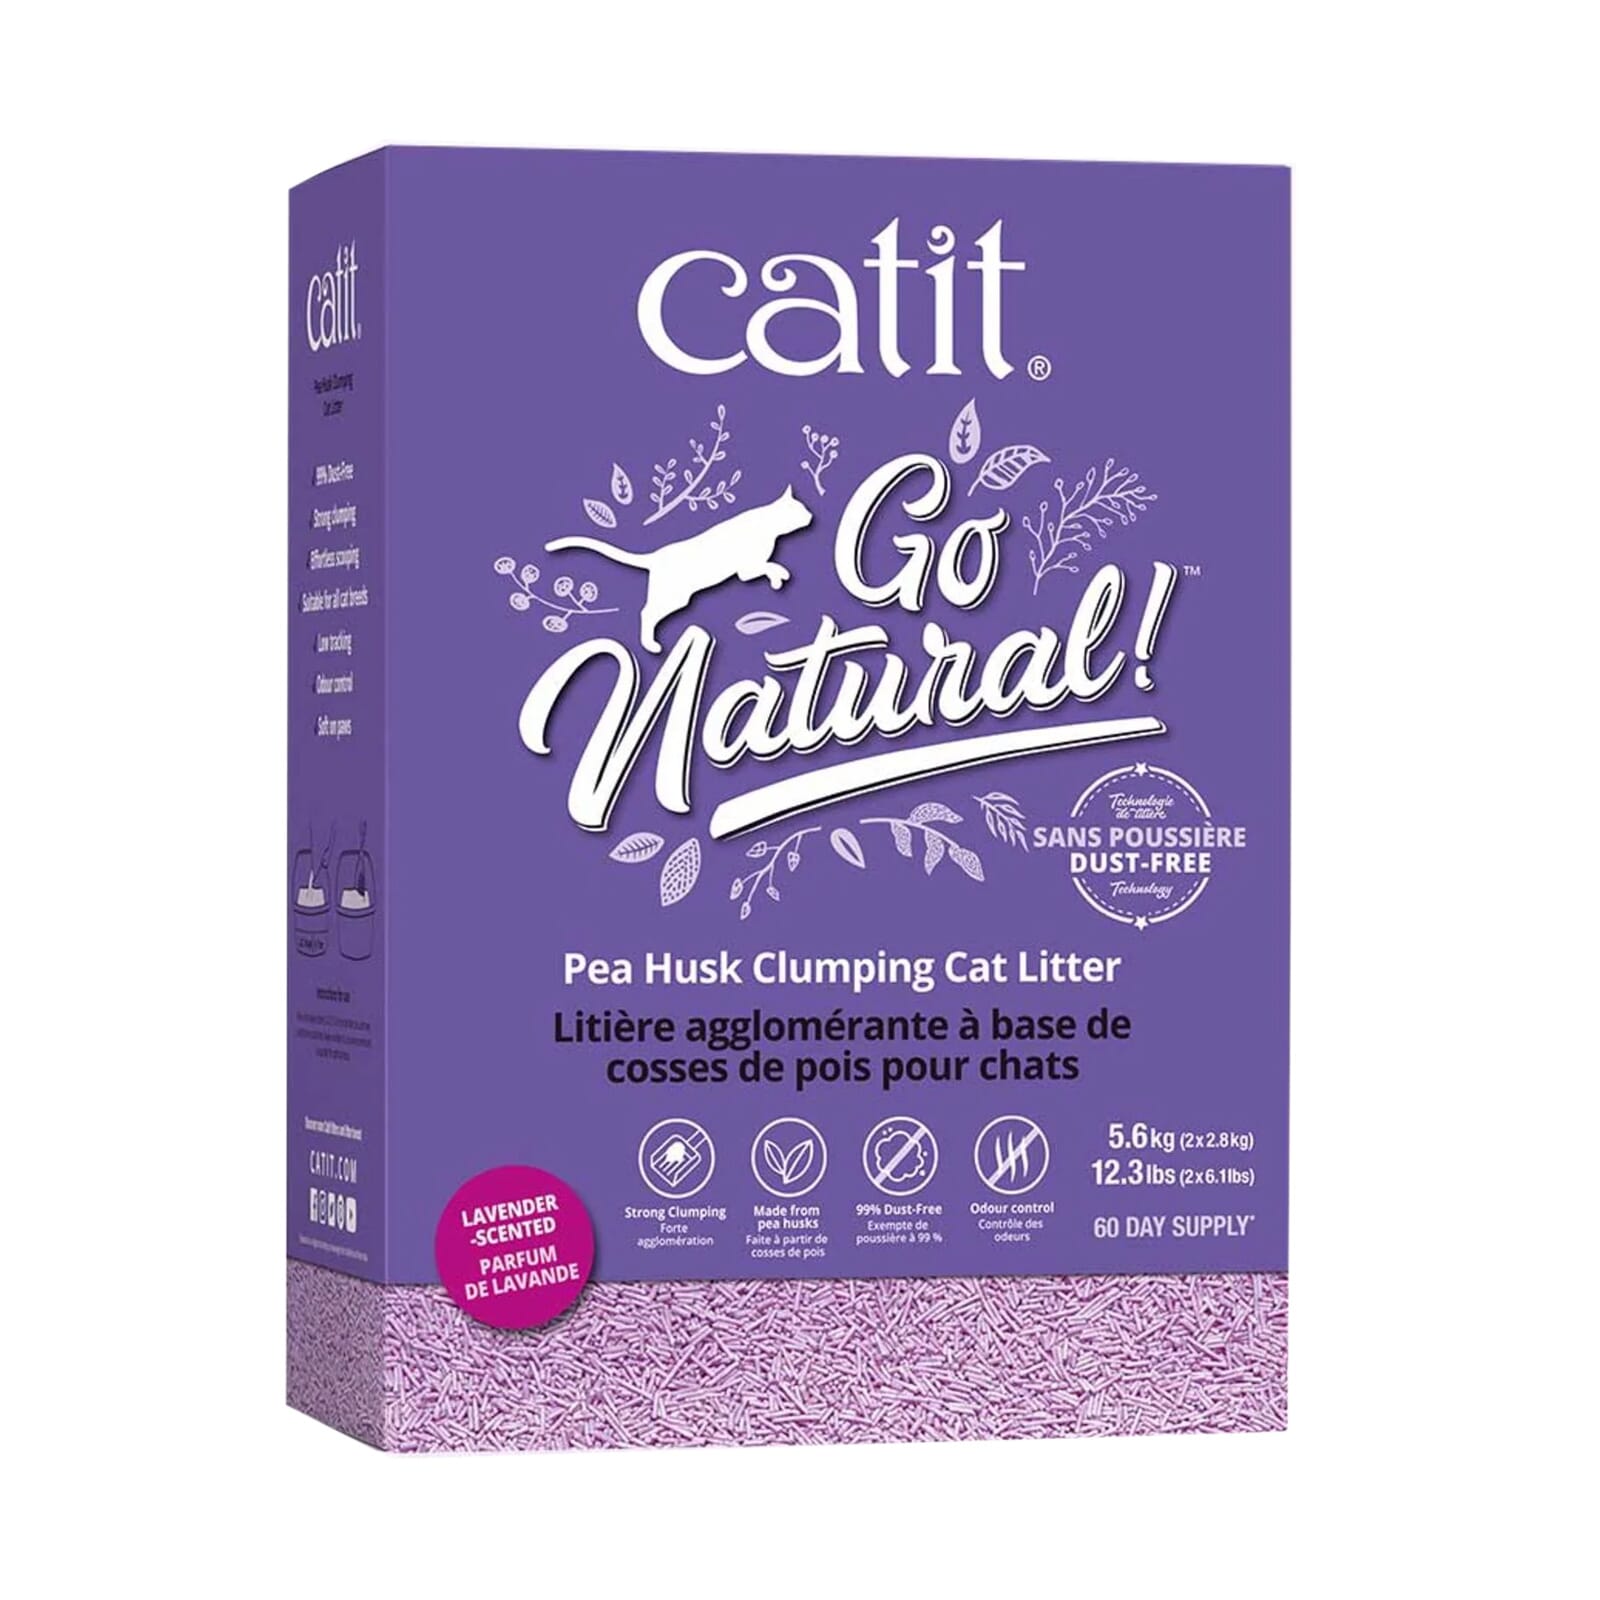 Catit Go Natural - Arena aglutinante para gatos de cáscara de guisante,  14.8 libras, natural (el embalaje puede variar)